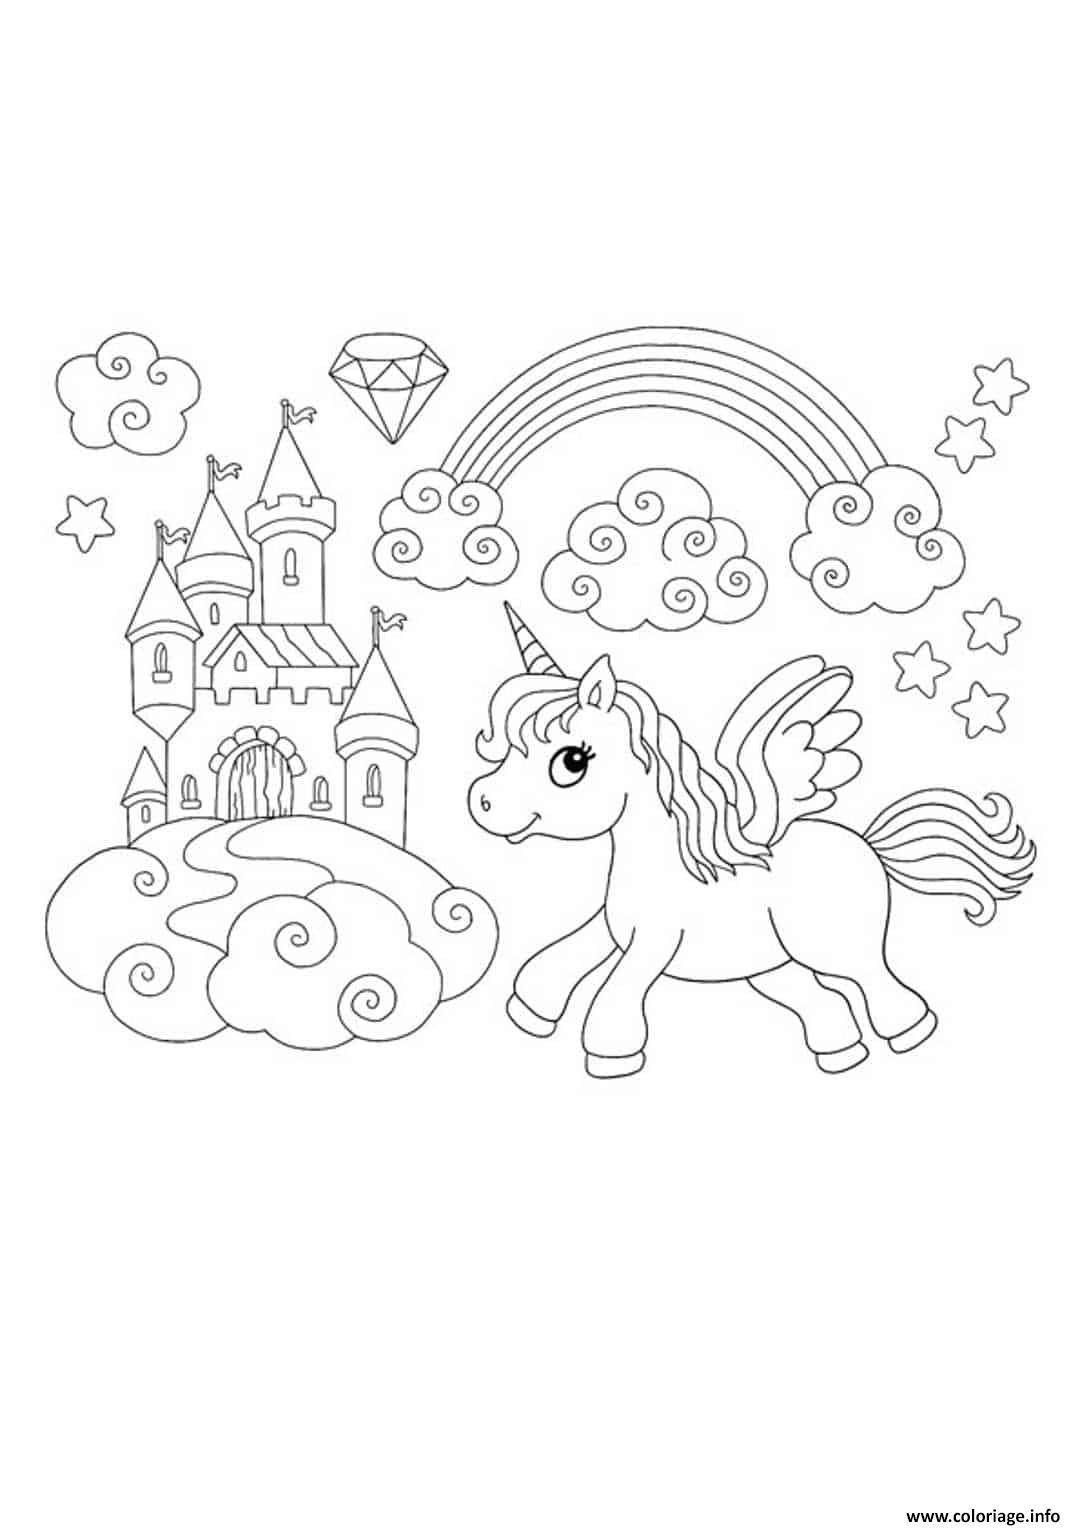 Edel Peer Ausführung coloriage licorne princesse a imprimer gratuit